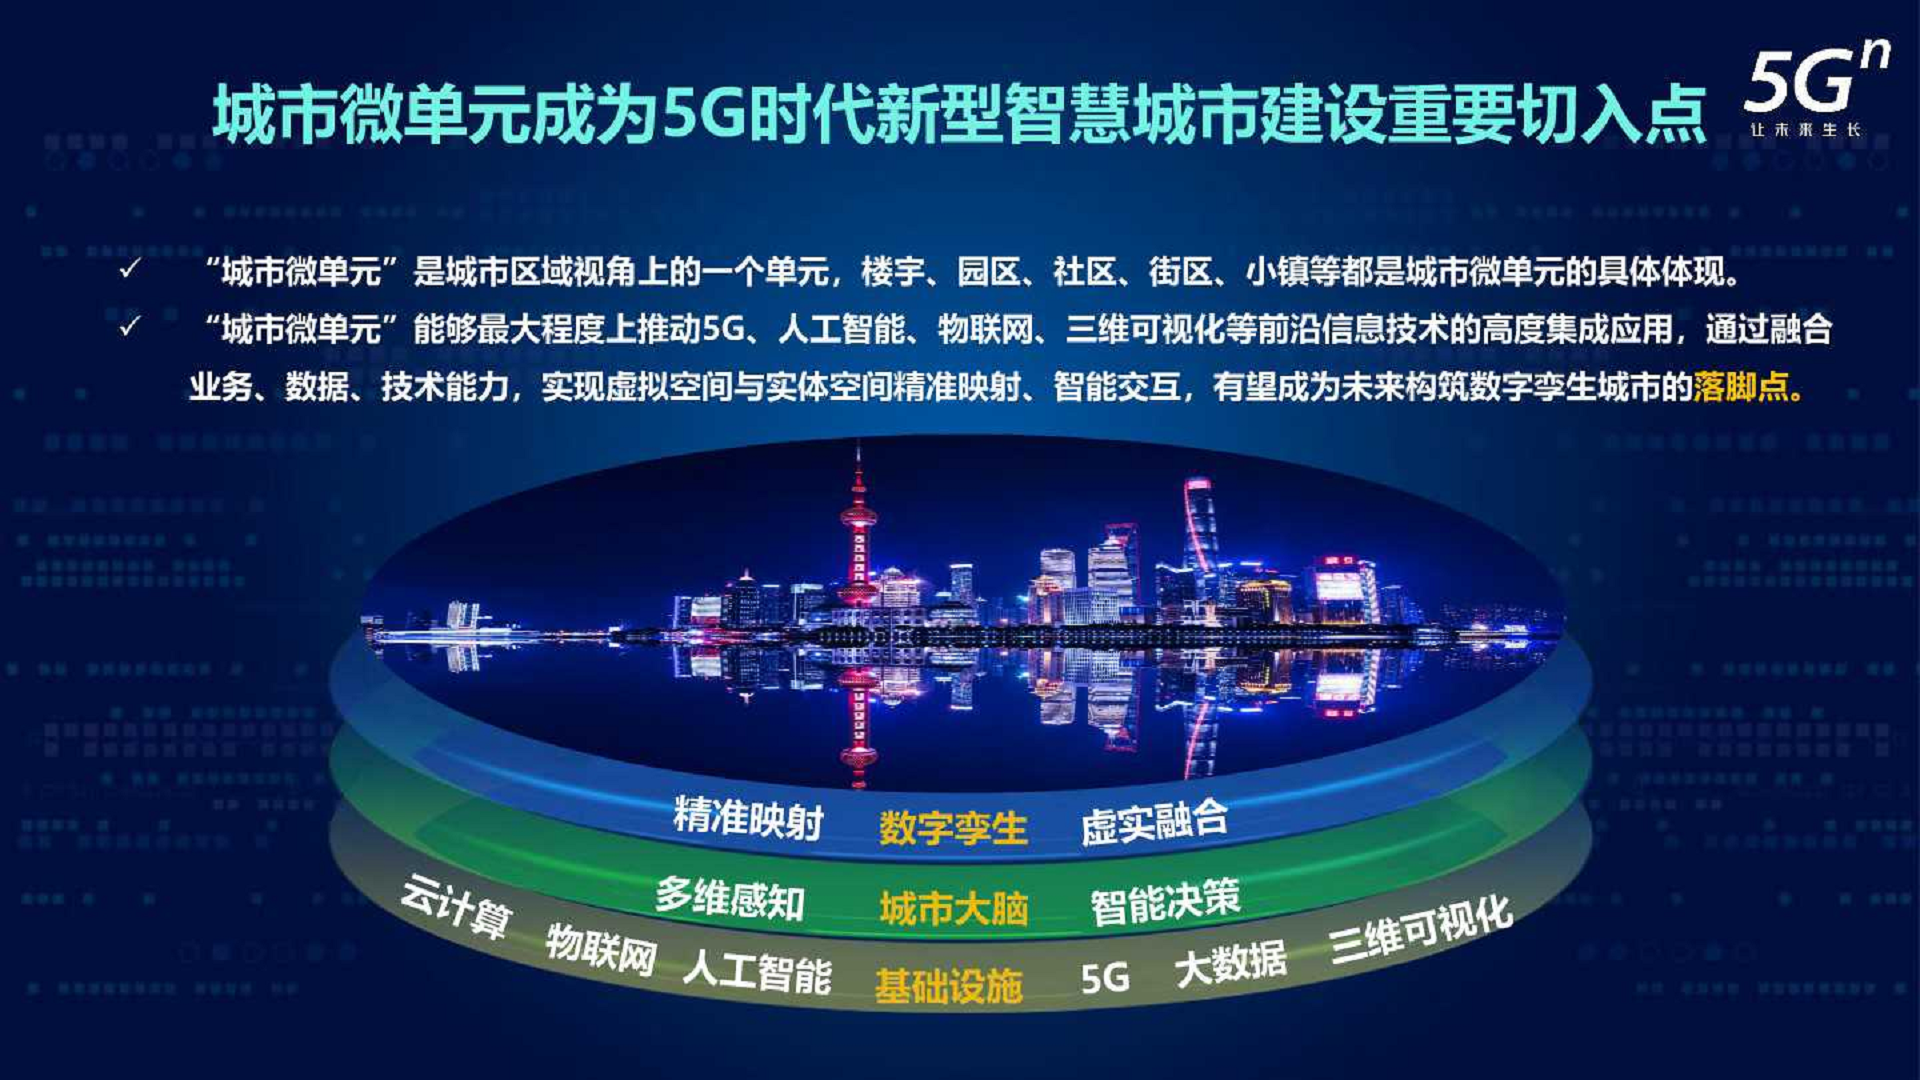 沈阳 5G 网络物流园：科技与物流融合的典范，引领未来物流潮流  第4张